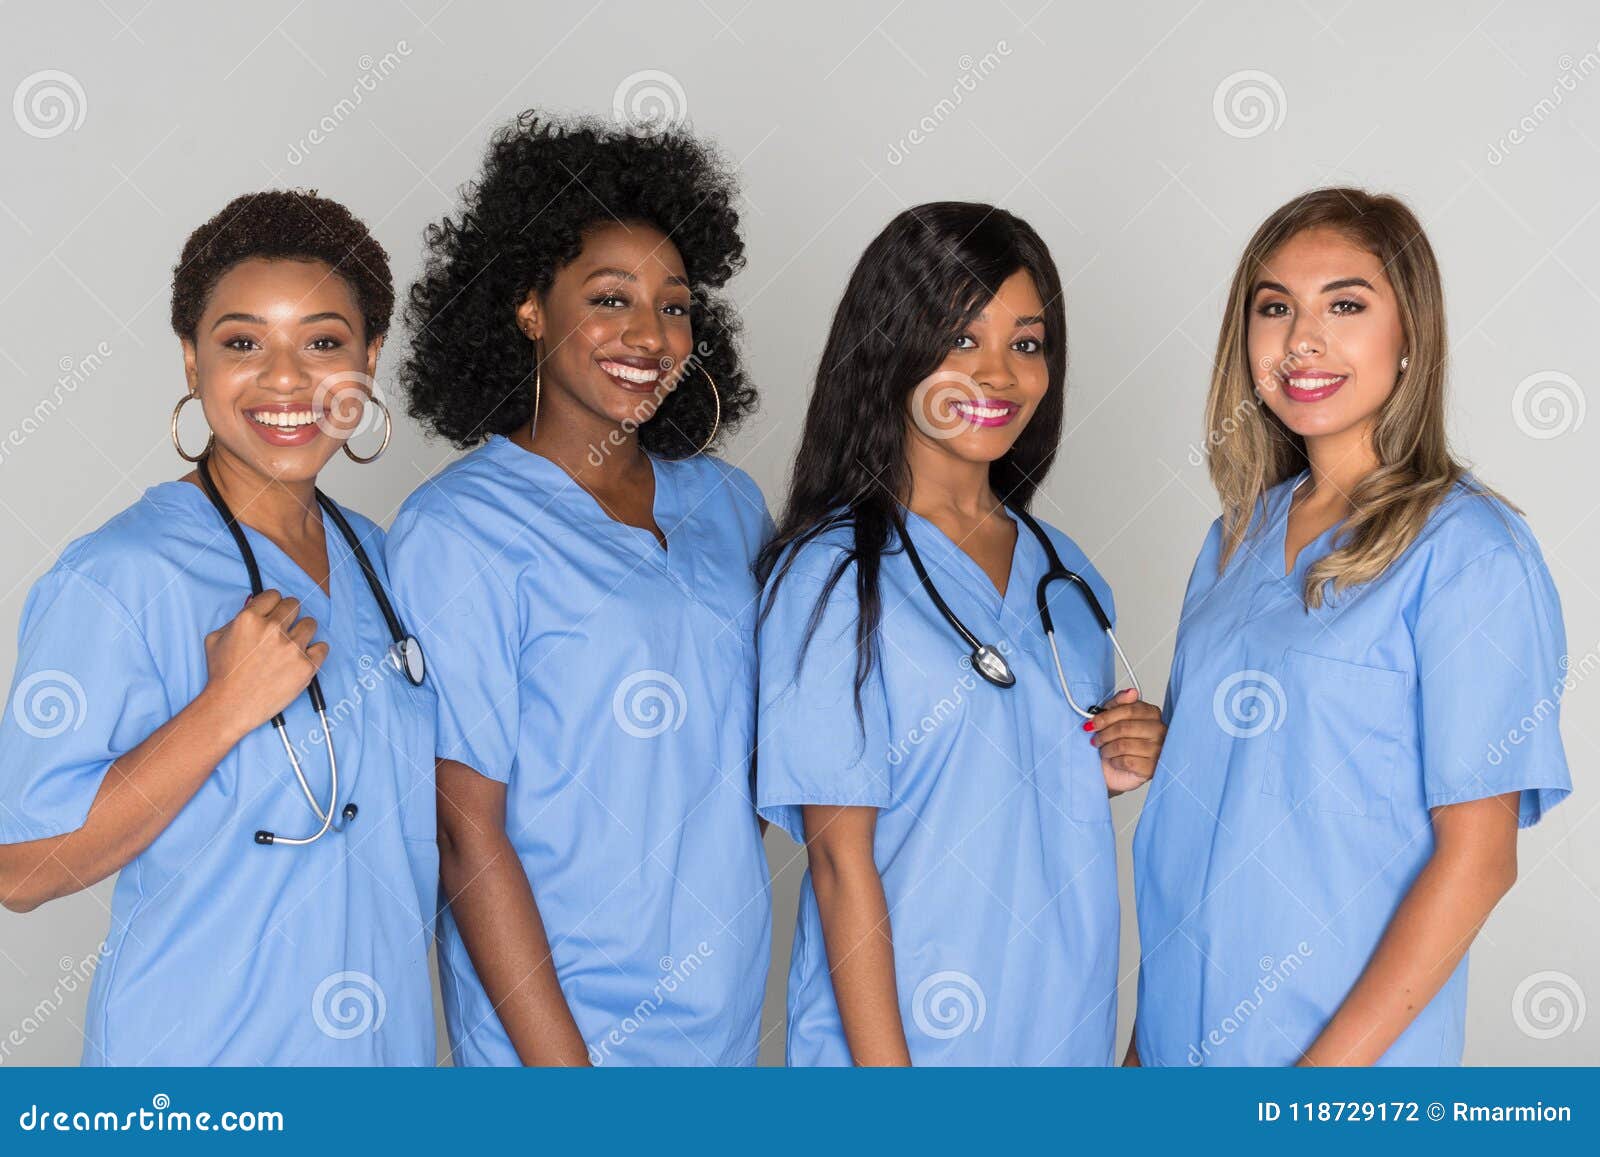 Group of Nurses stock photo. Image of female, hospital - 118729172